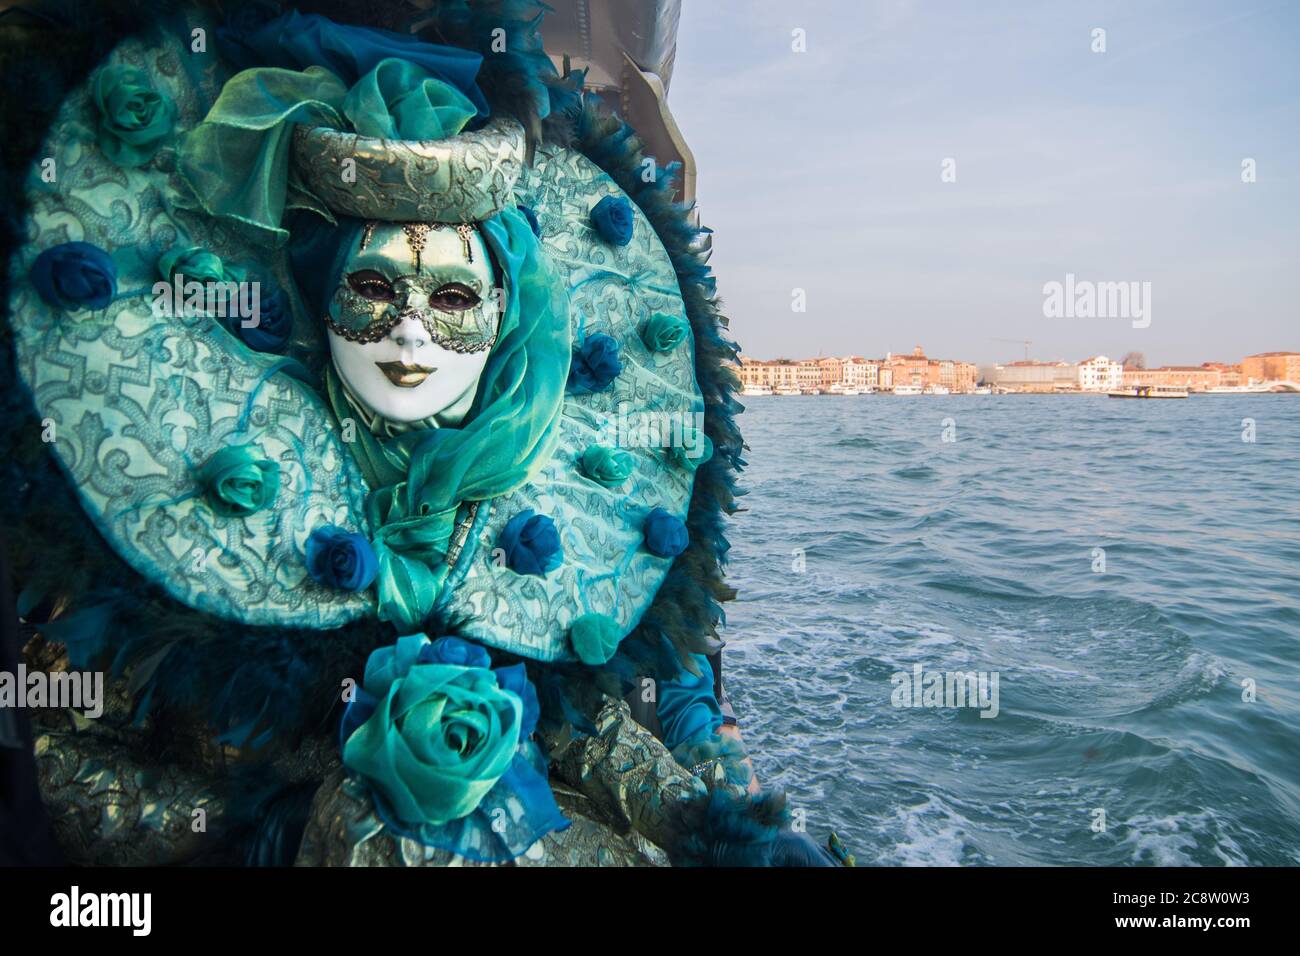 Eine wunderschöne Maske posiert vor dem Venedig Kanal in einem hellblauen Kostüm mit Rose. Stockfoto